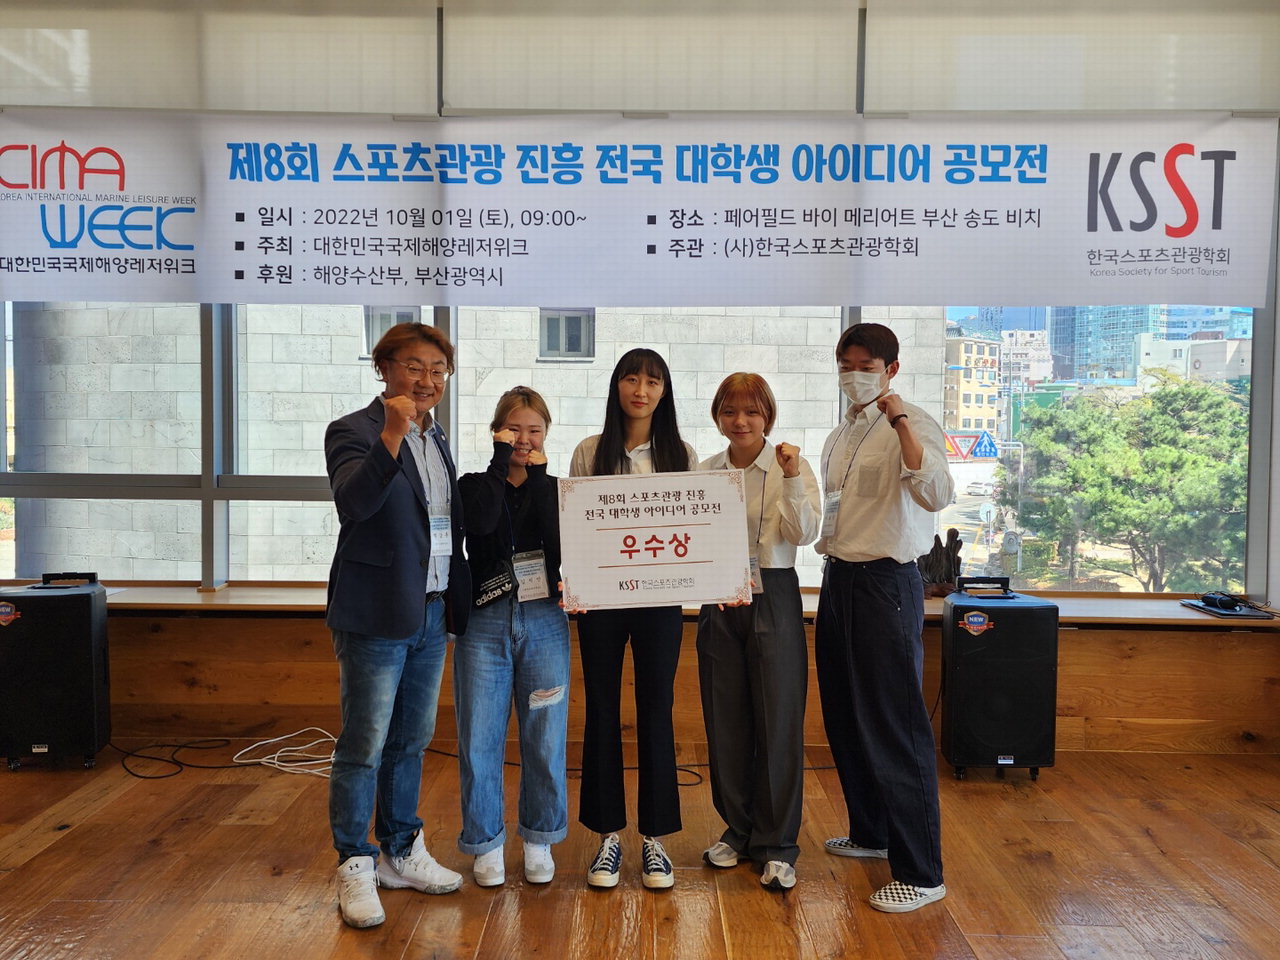 왼쪽부터 석강훈 교수, 김지연, 김이슬, 이강희, 이효근 학생